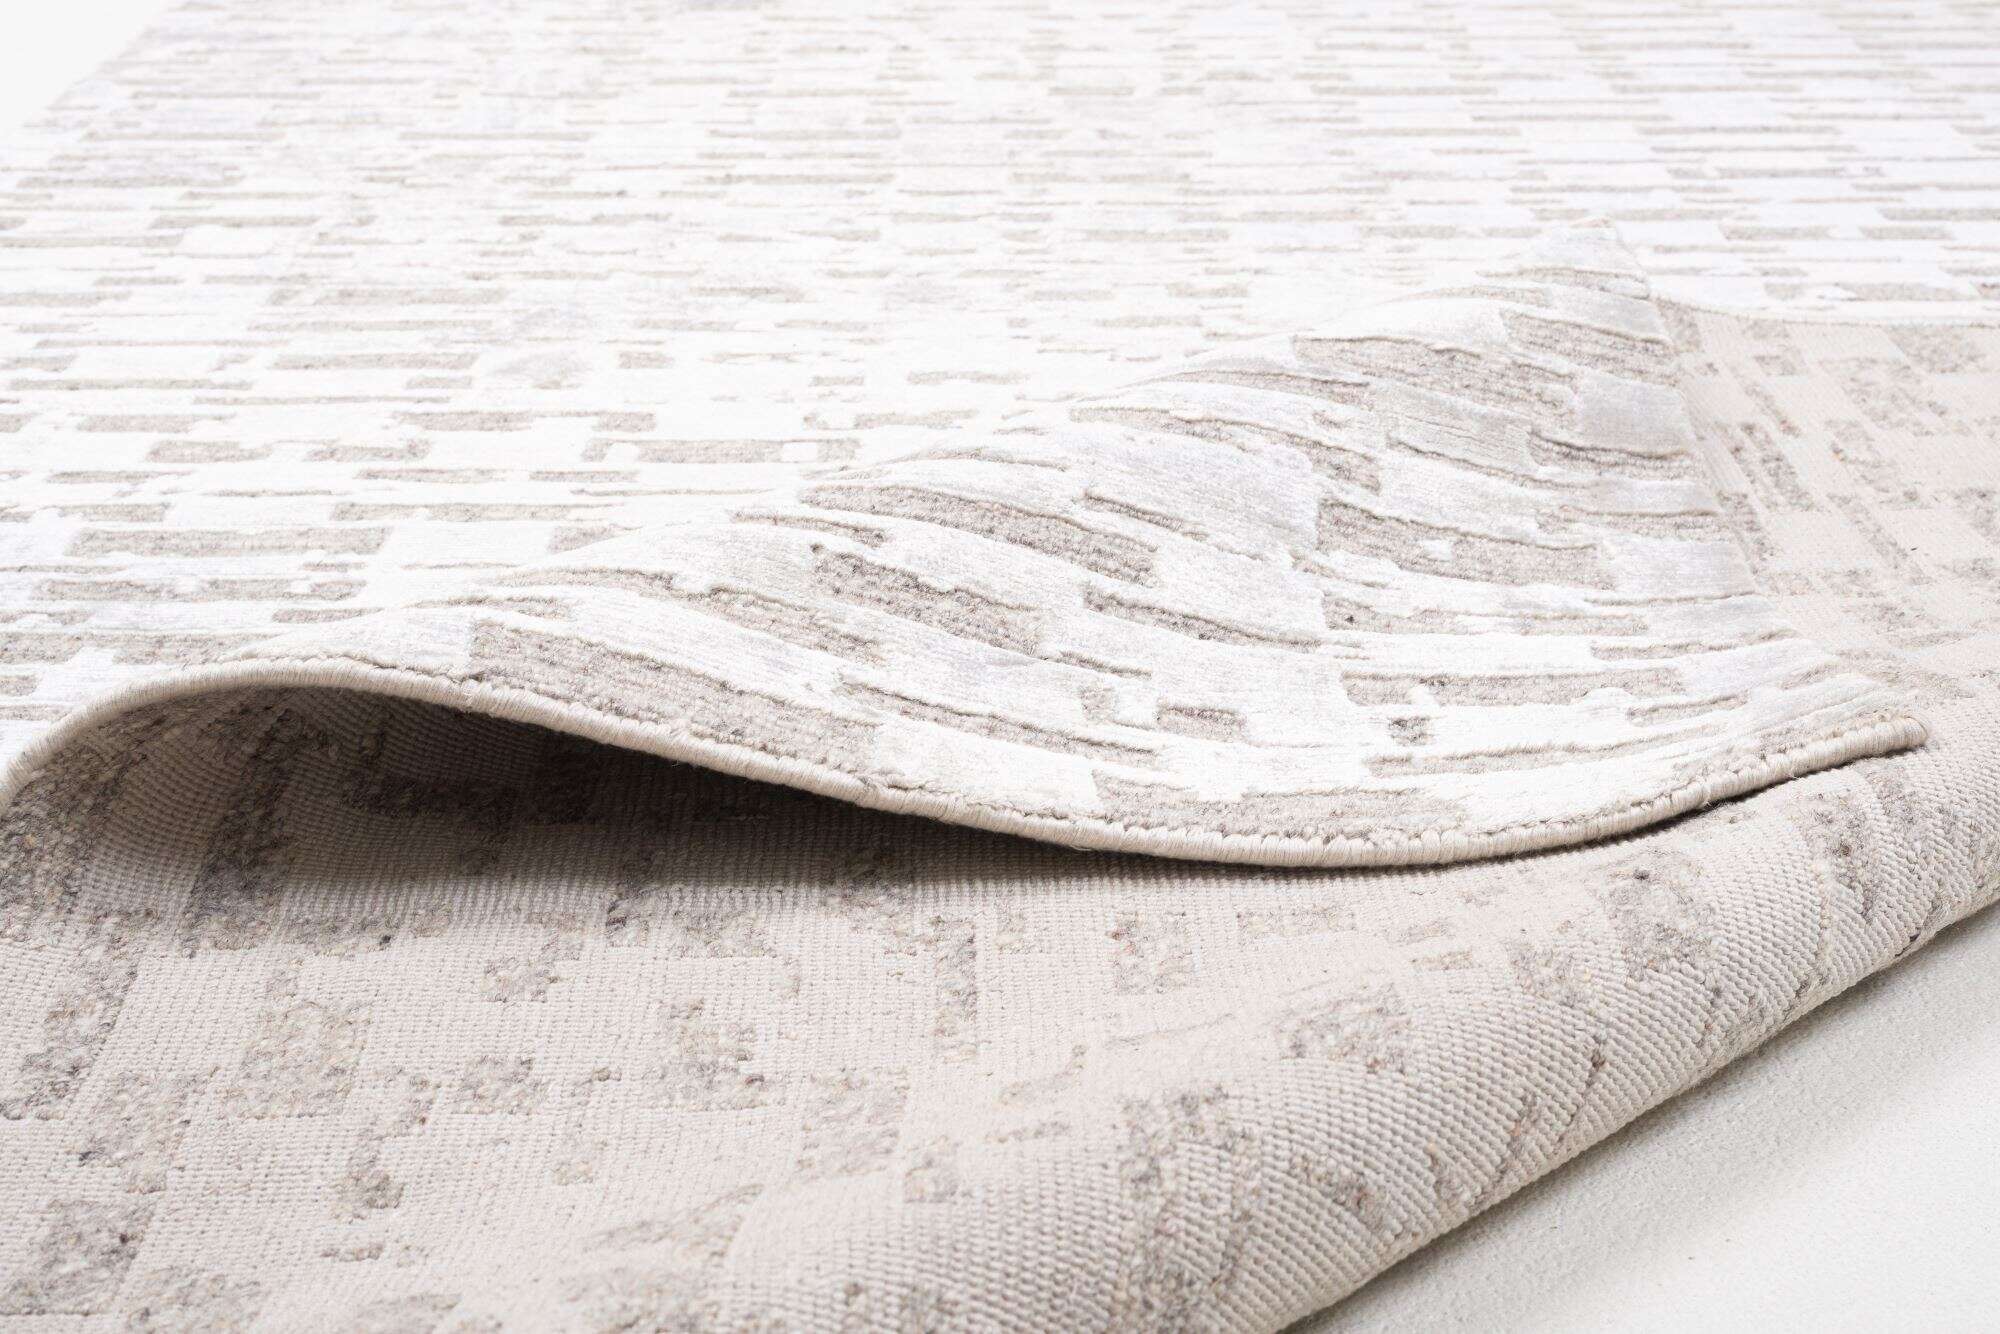 Victoria Moderner Teppich 160x230cm Viskose Wolle beige mit grau